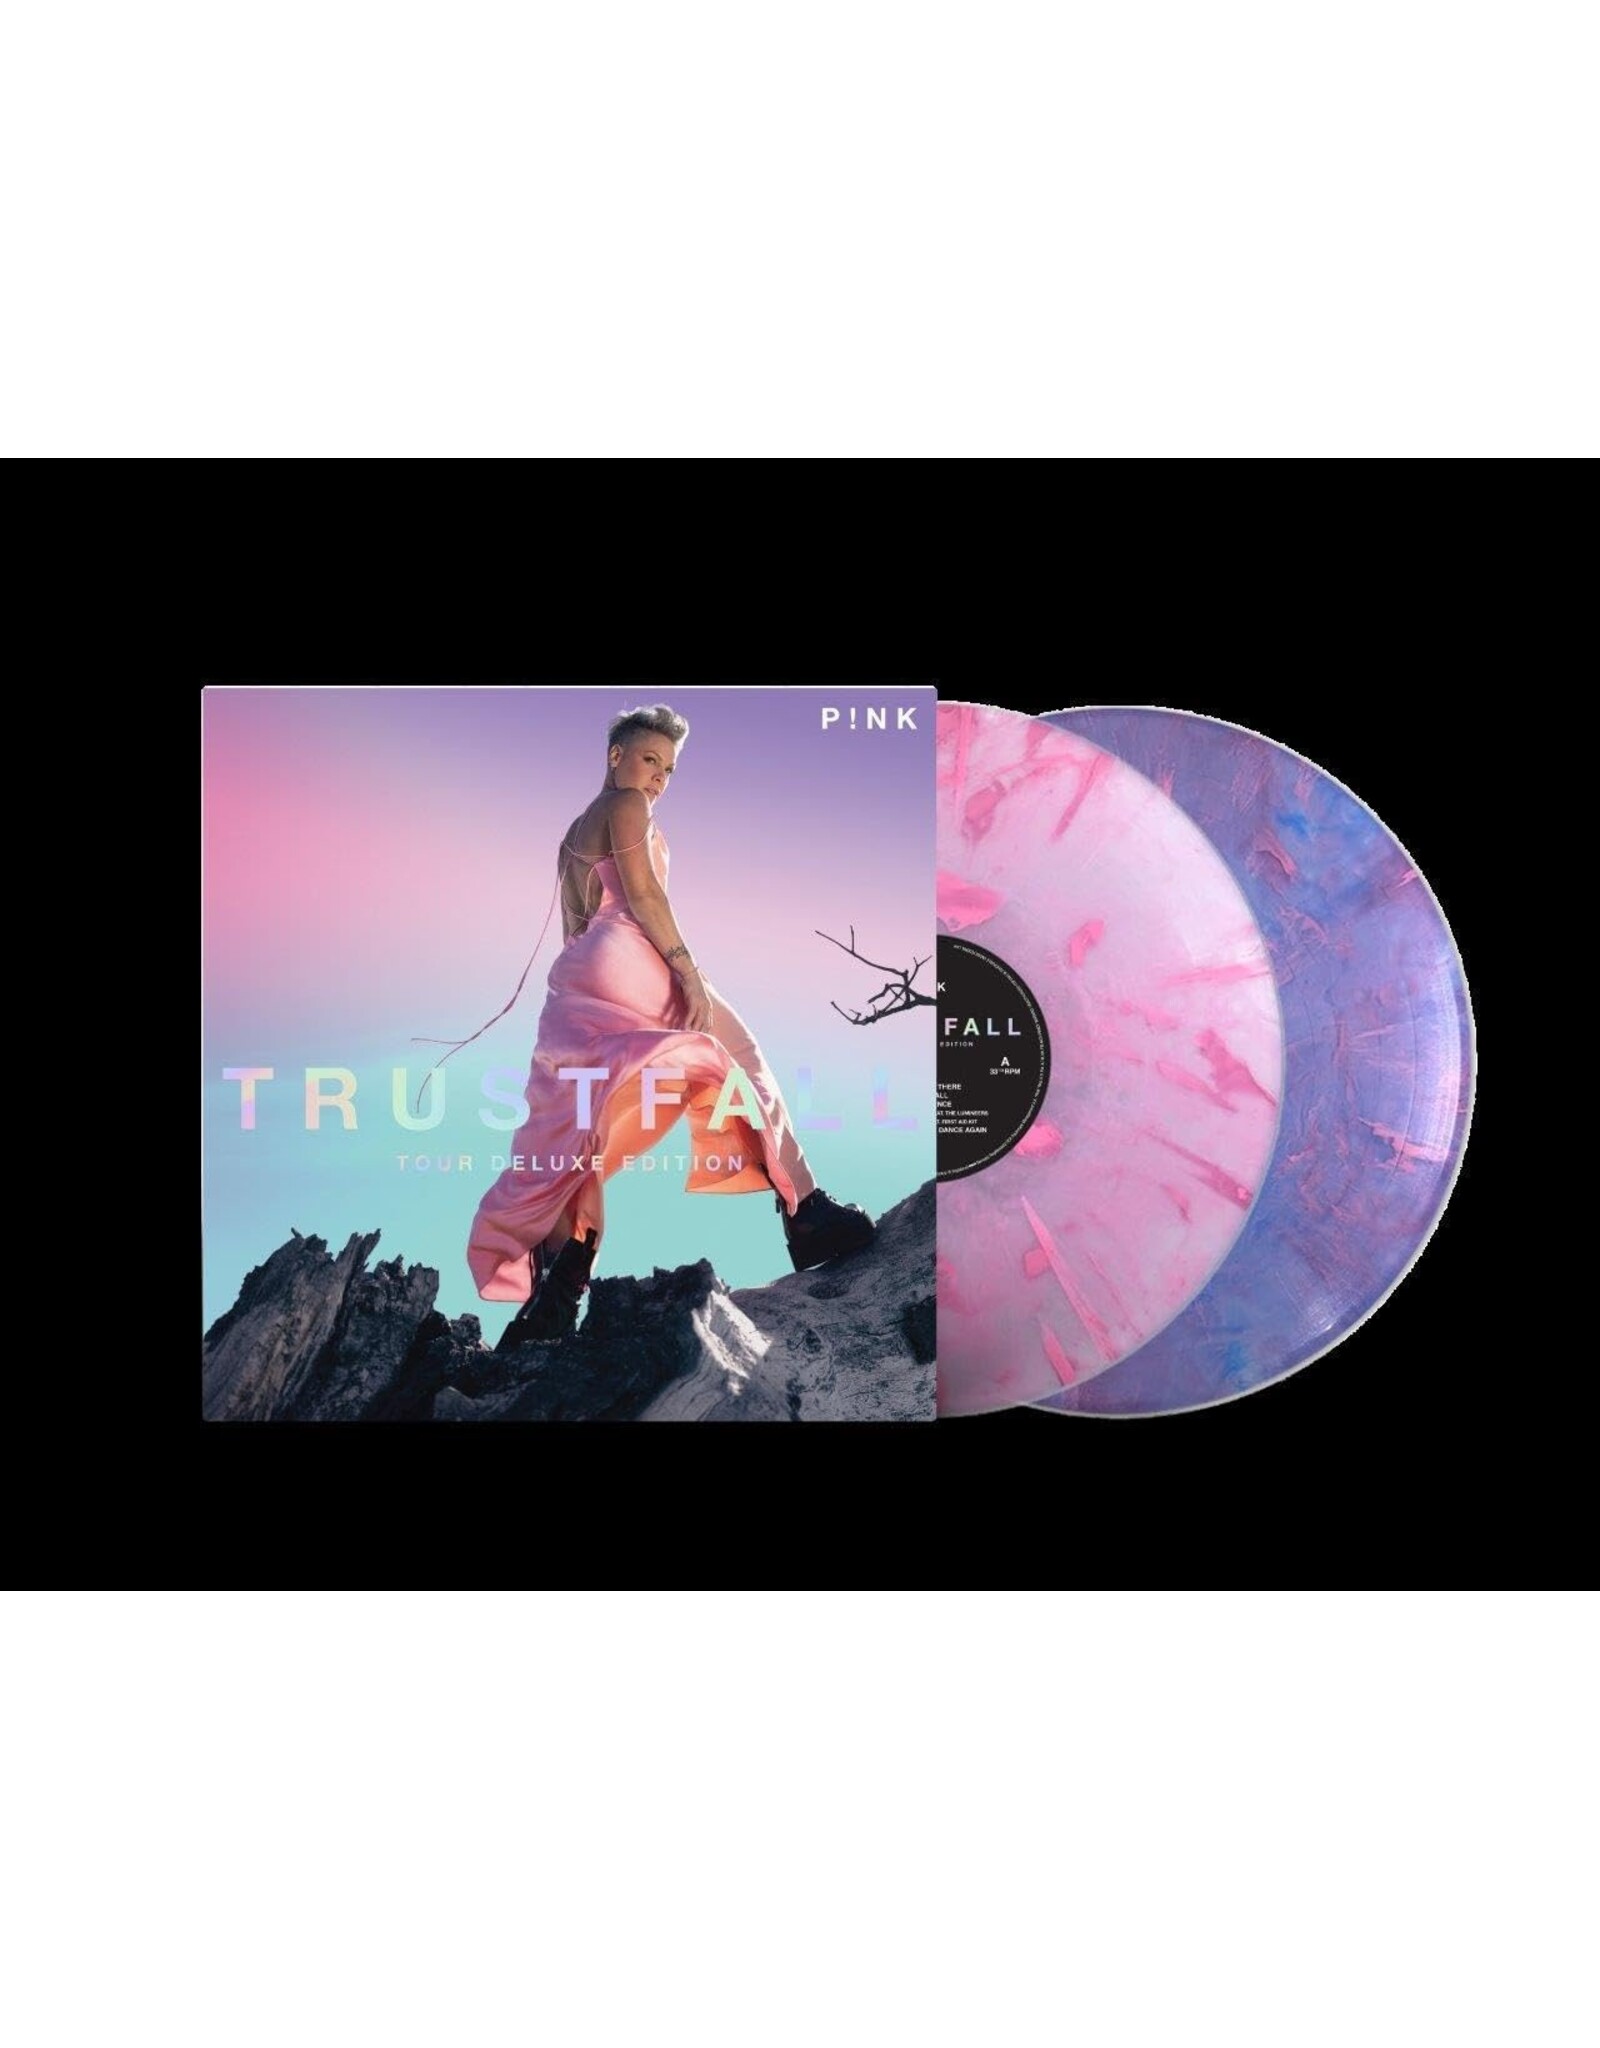 P!nk - Trustfall (Tour Deluxe Edition) [Pink / Purple Vinyl]